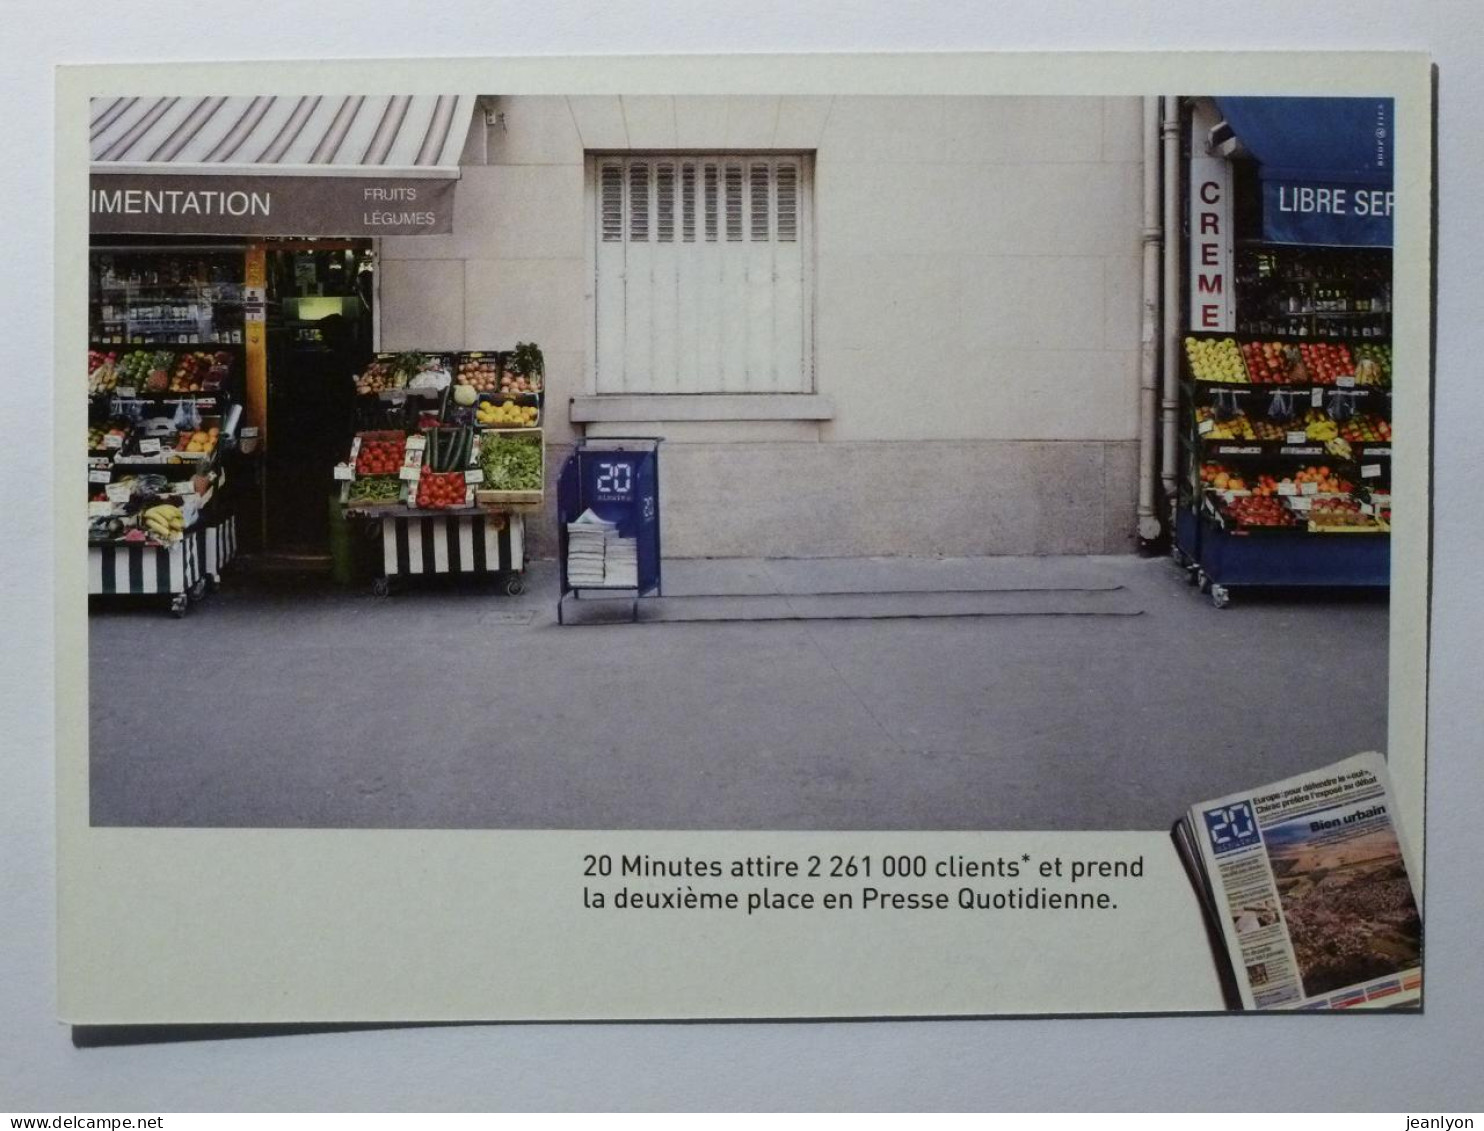 COMMERCE - Marchand FRUITS & LEGUMES à Coté Présentoire Journal 20 Minutes - Carte Publicitaire - Mercaderes